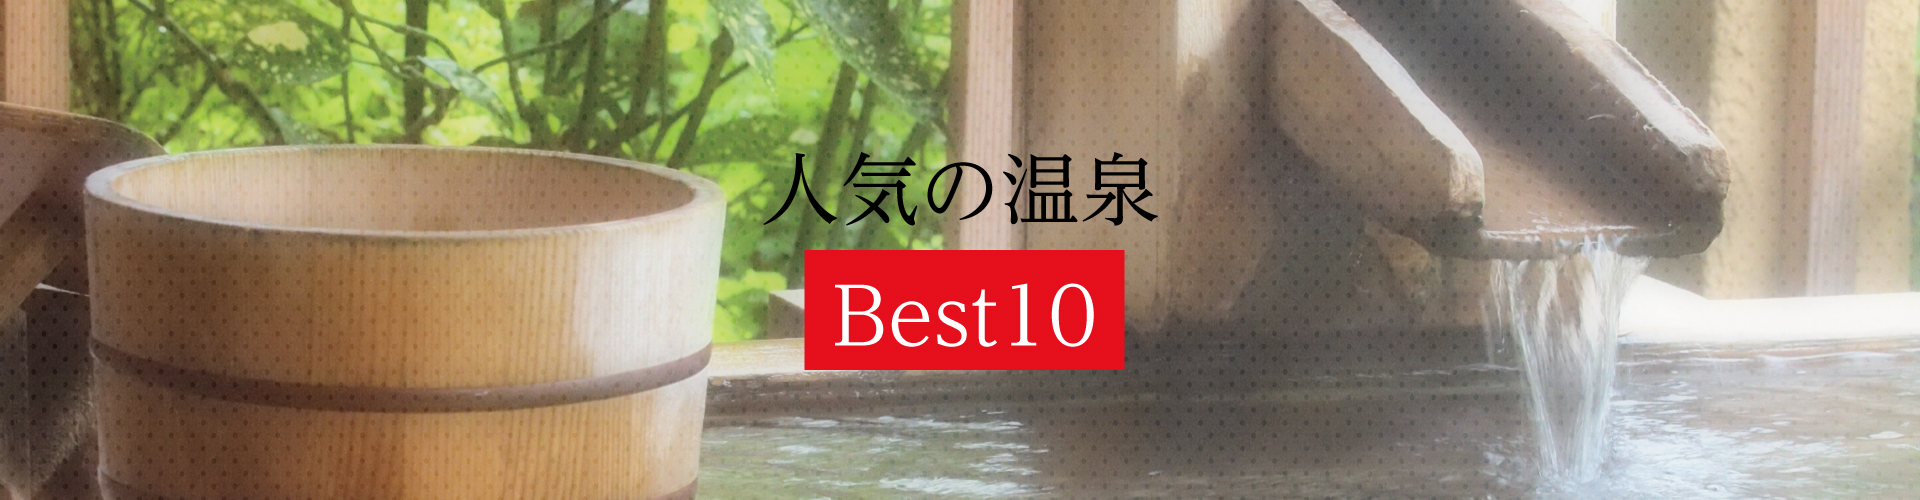 人気の温泉 Best10